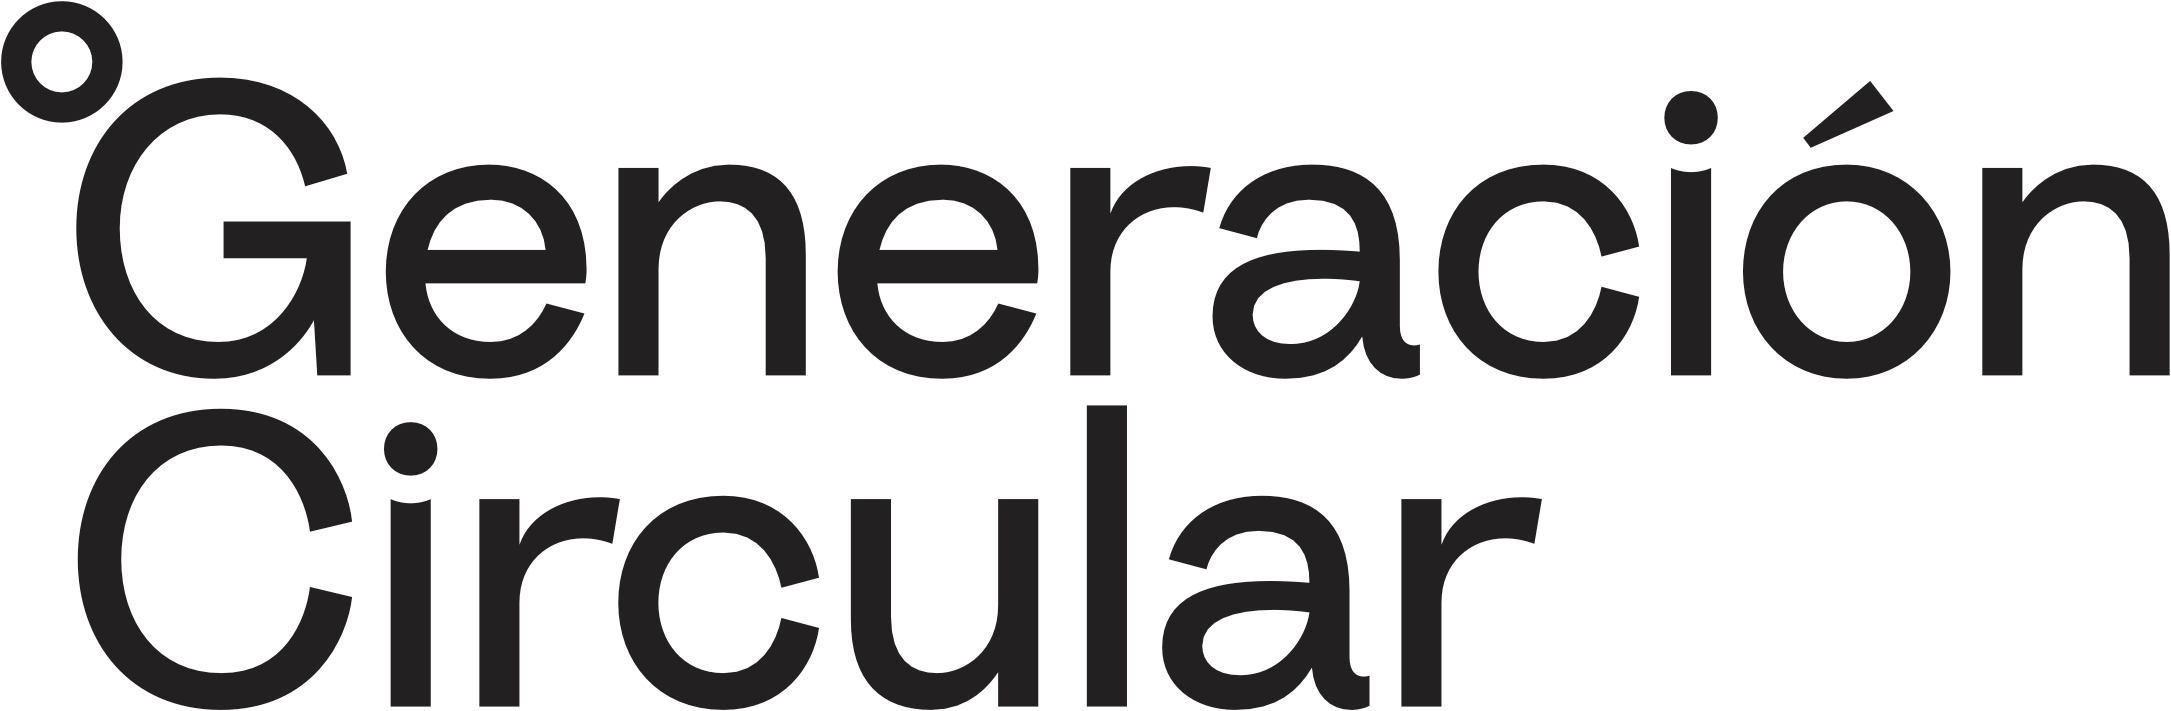 Gen C logo ref